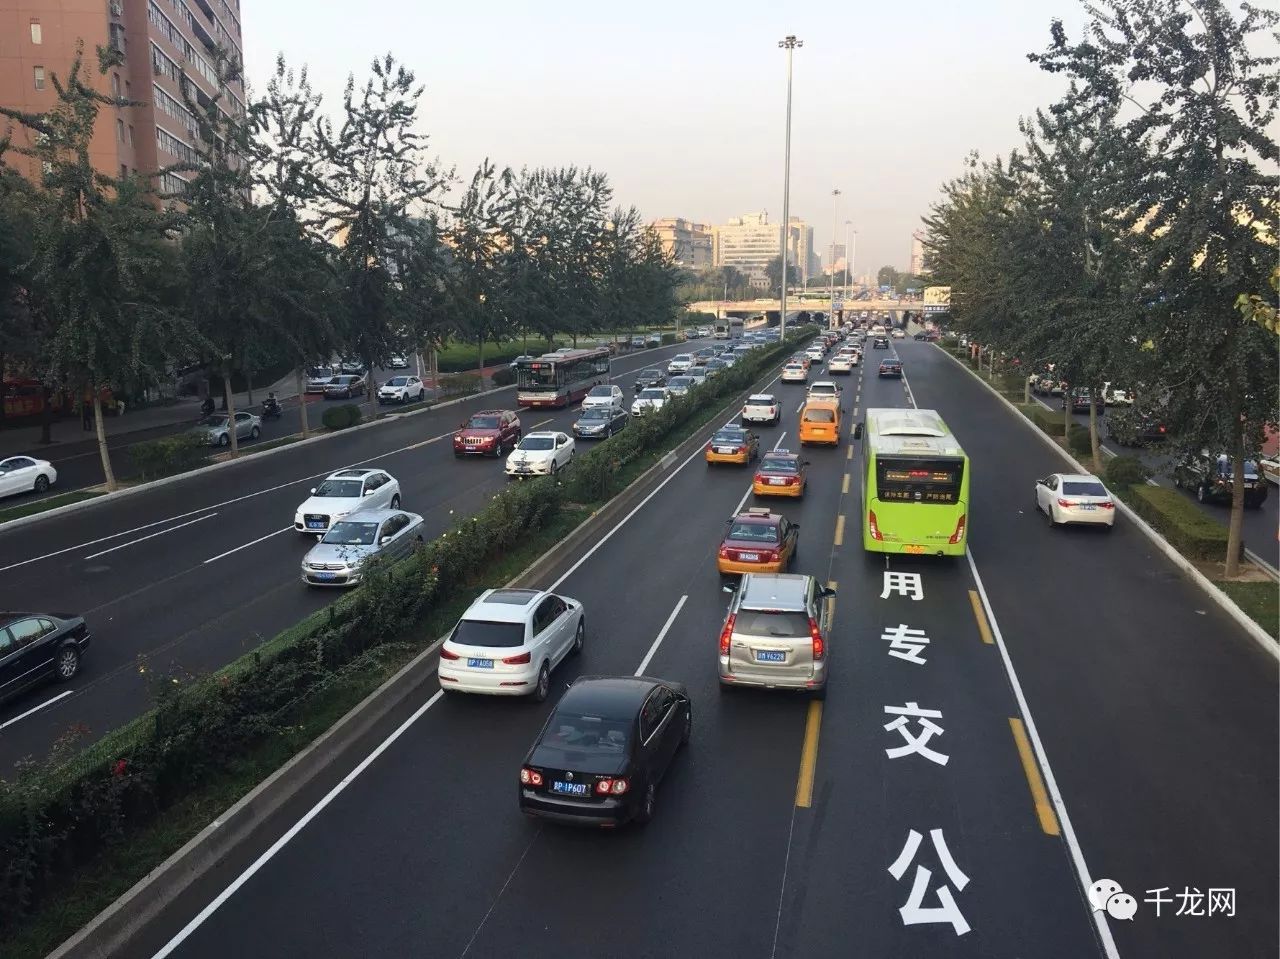 出行更方便!北京市2020年将有1000公里公交专用道